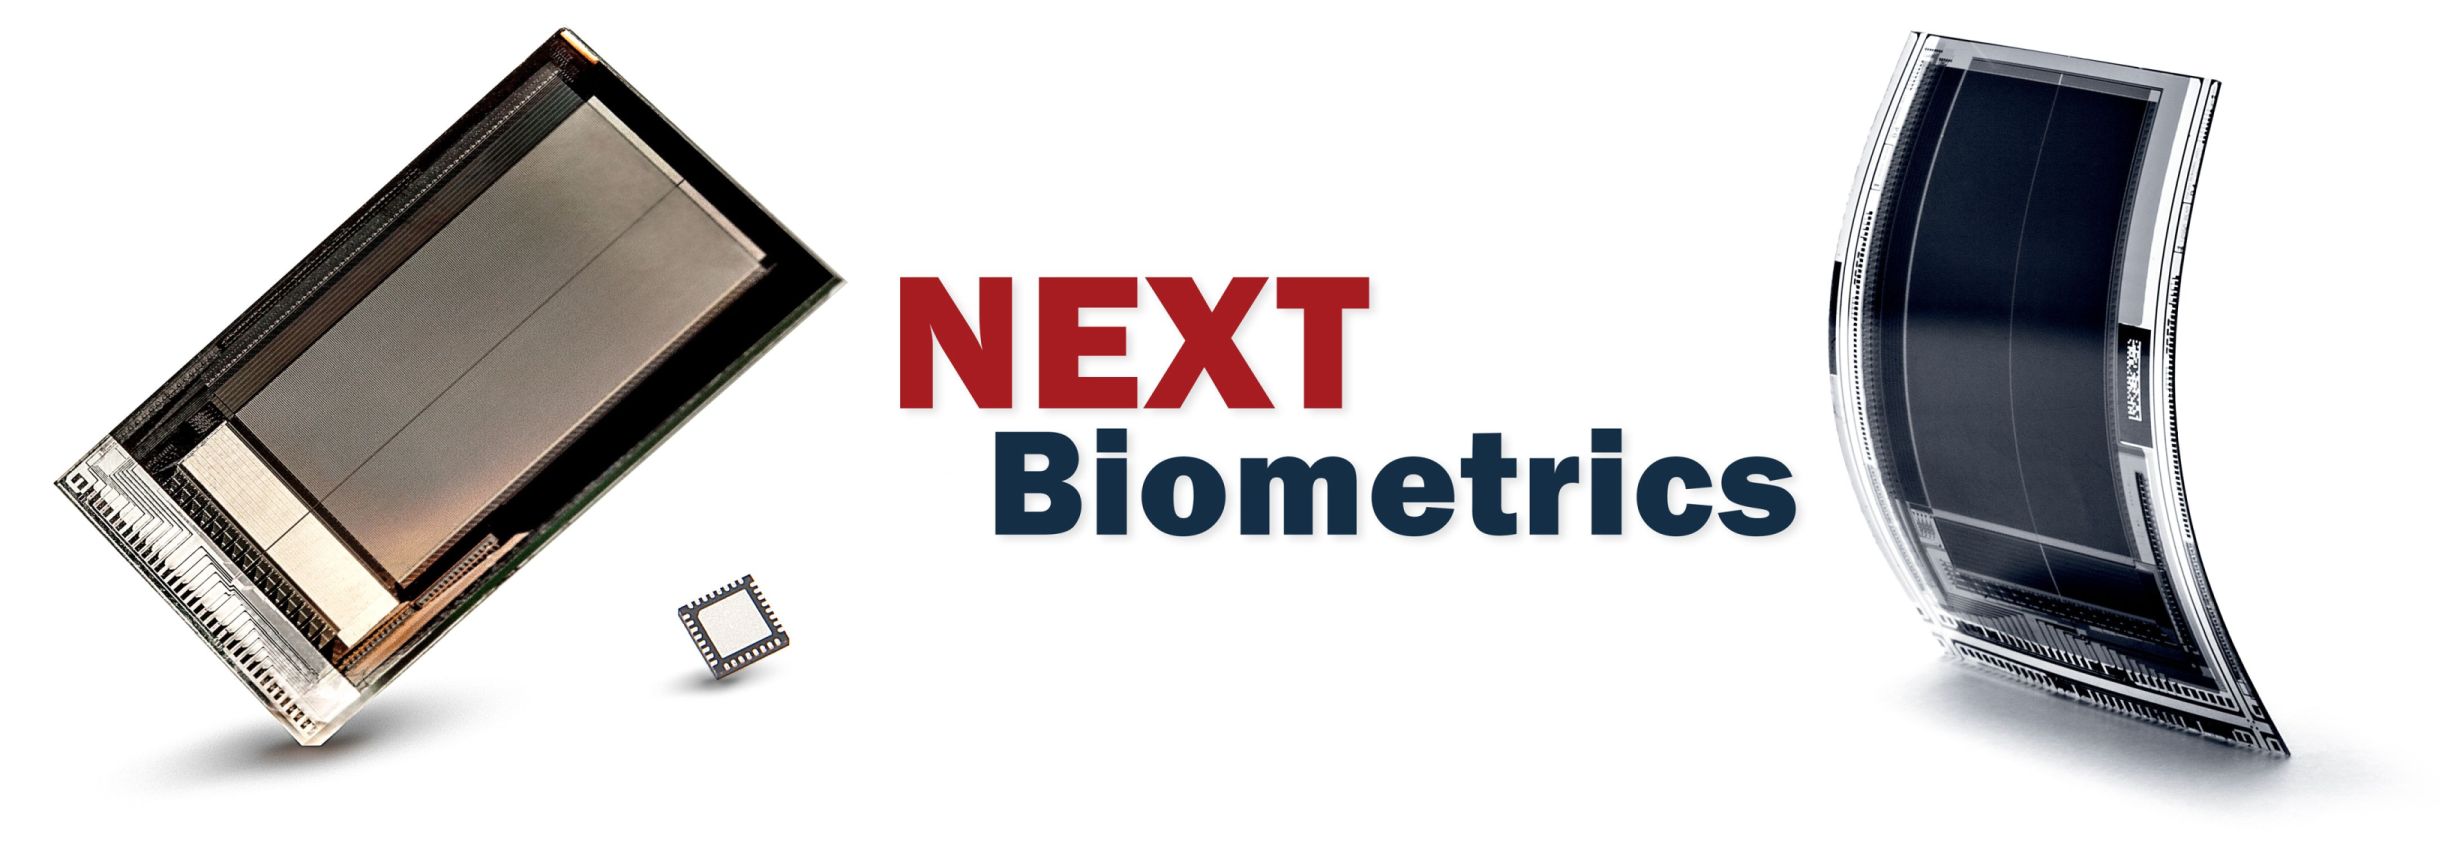 NEXT Biometrics Wins